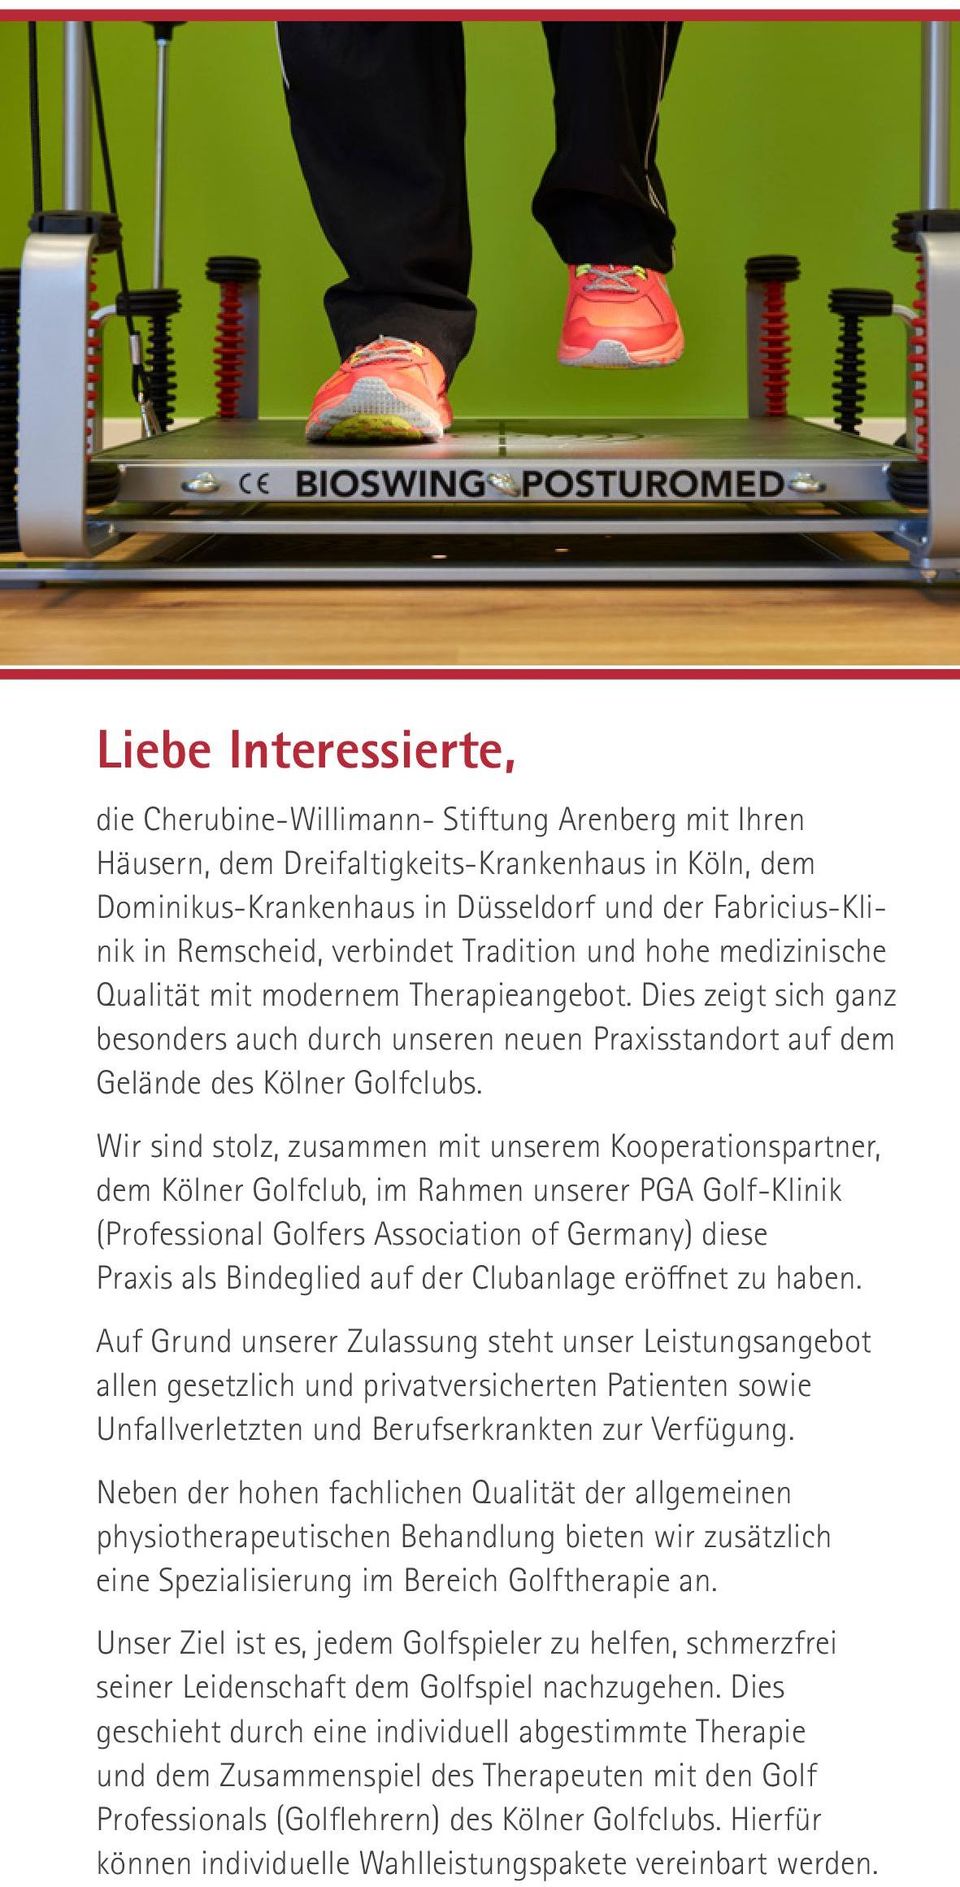 Wir sind stolz, zusammen mit unserem Kooperationspartner, dem Kölner Golfclub, im Rahmen unserer PGA Golf-Klinik (Professional Golfers Association of Germany) diese Praxis als Bindeglied auf der